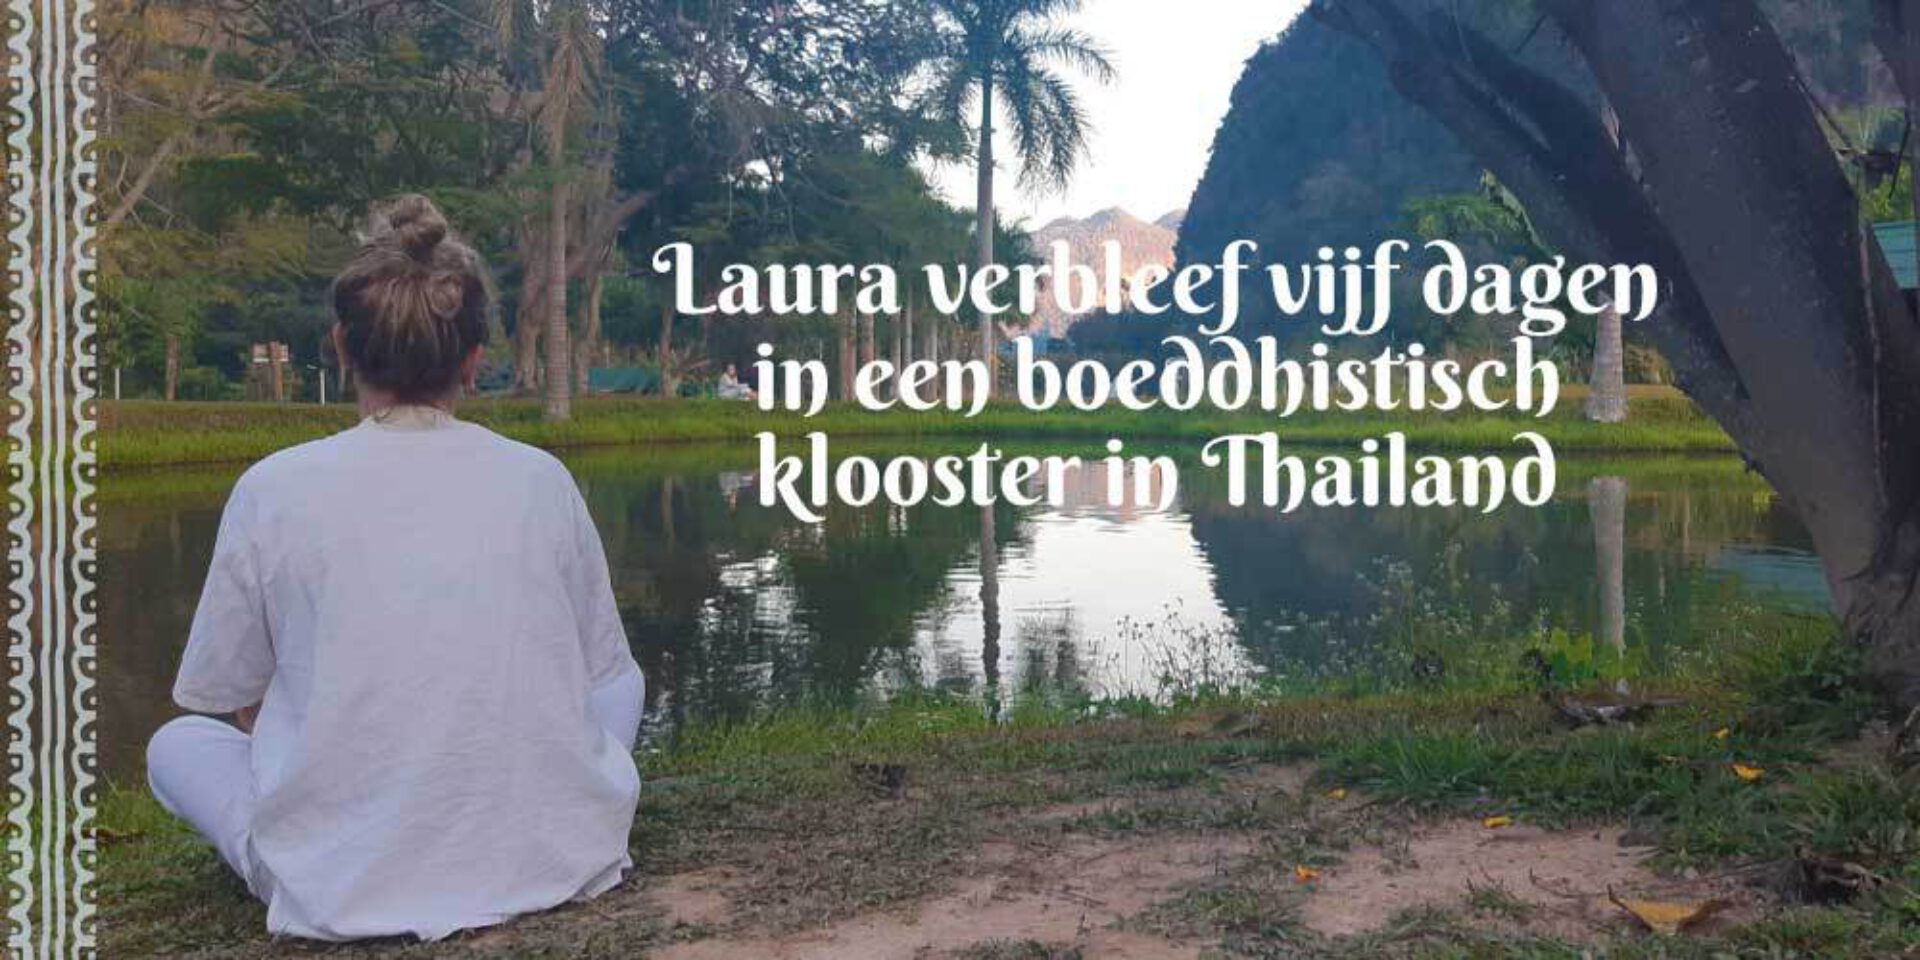 Laura verbleef  vijf dagen in een boeddhistisch klooster in Thailand